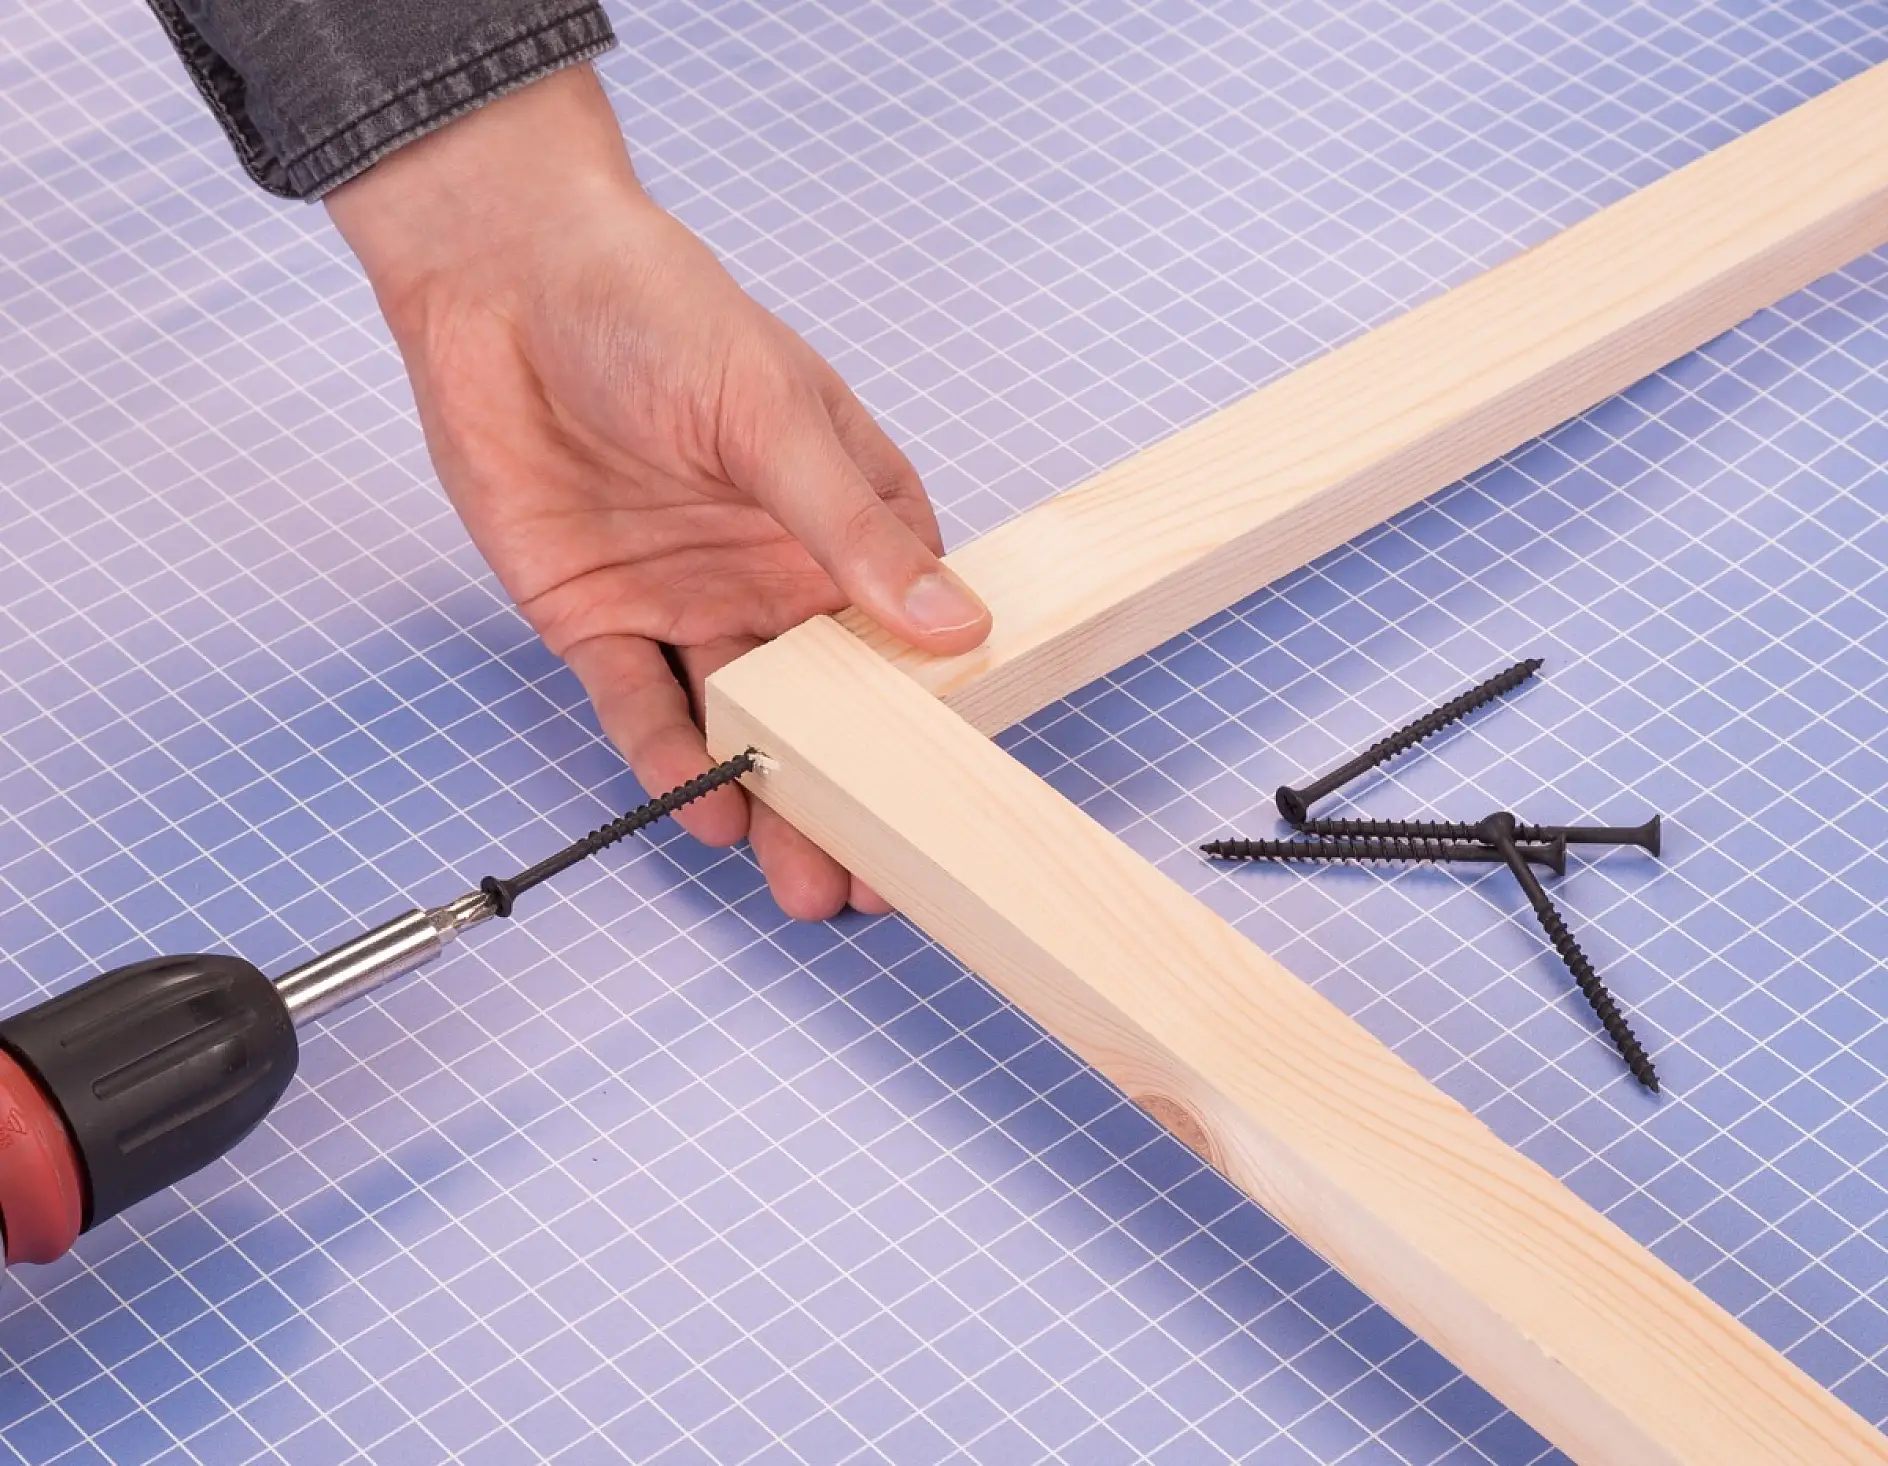 Skręć drewniane listwy za pomocą wkrętów, przykręcając je tak, aby otrzymać prostokąt. Najkrótsze listewki wykorzystaj jako nóżki.